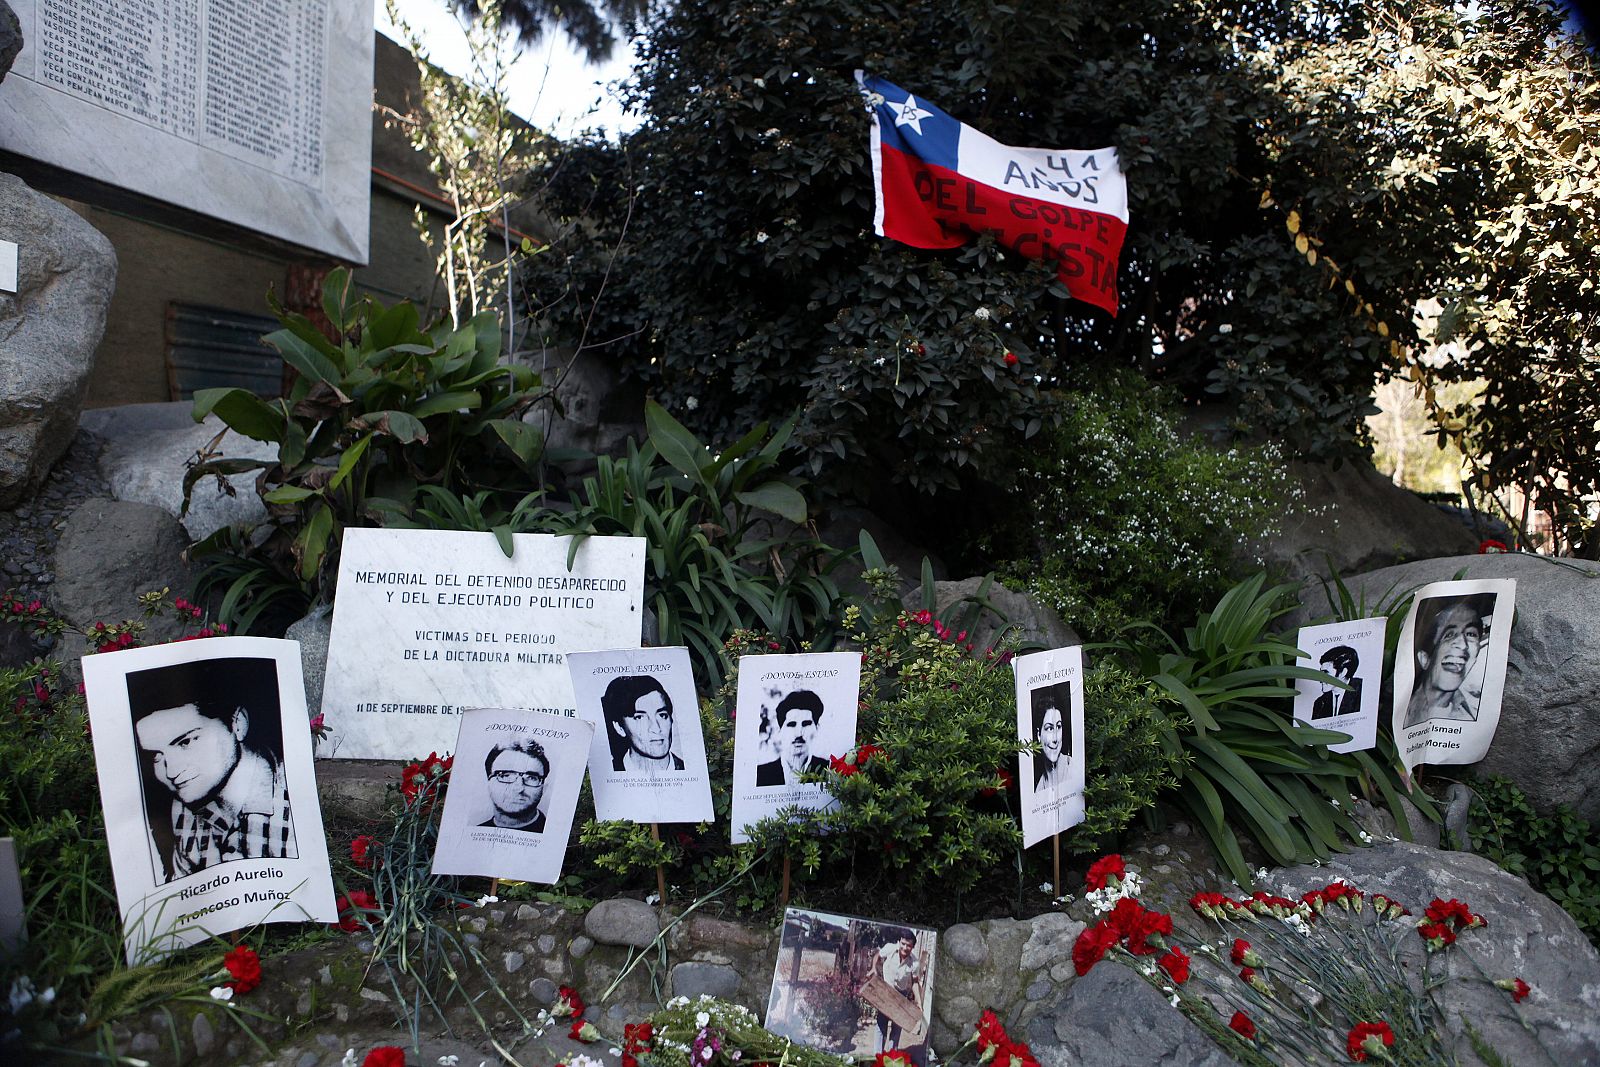 Fotografías de detenidos desaparecidos son ubicadas en el monumento a los desaparecidos en el 41º aniversario del golpe militar de 1973 en Chile.